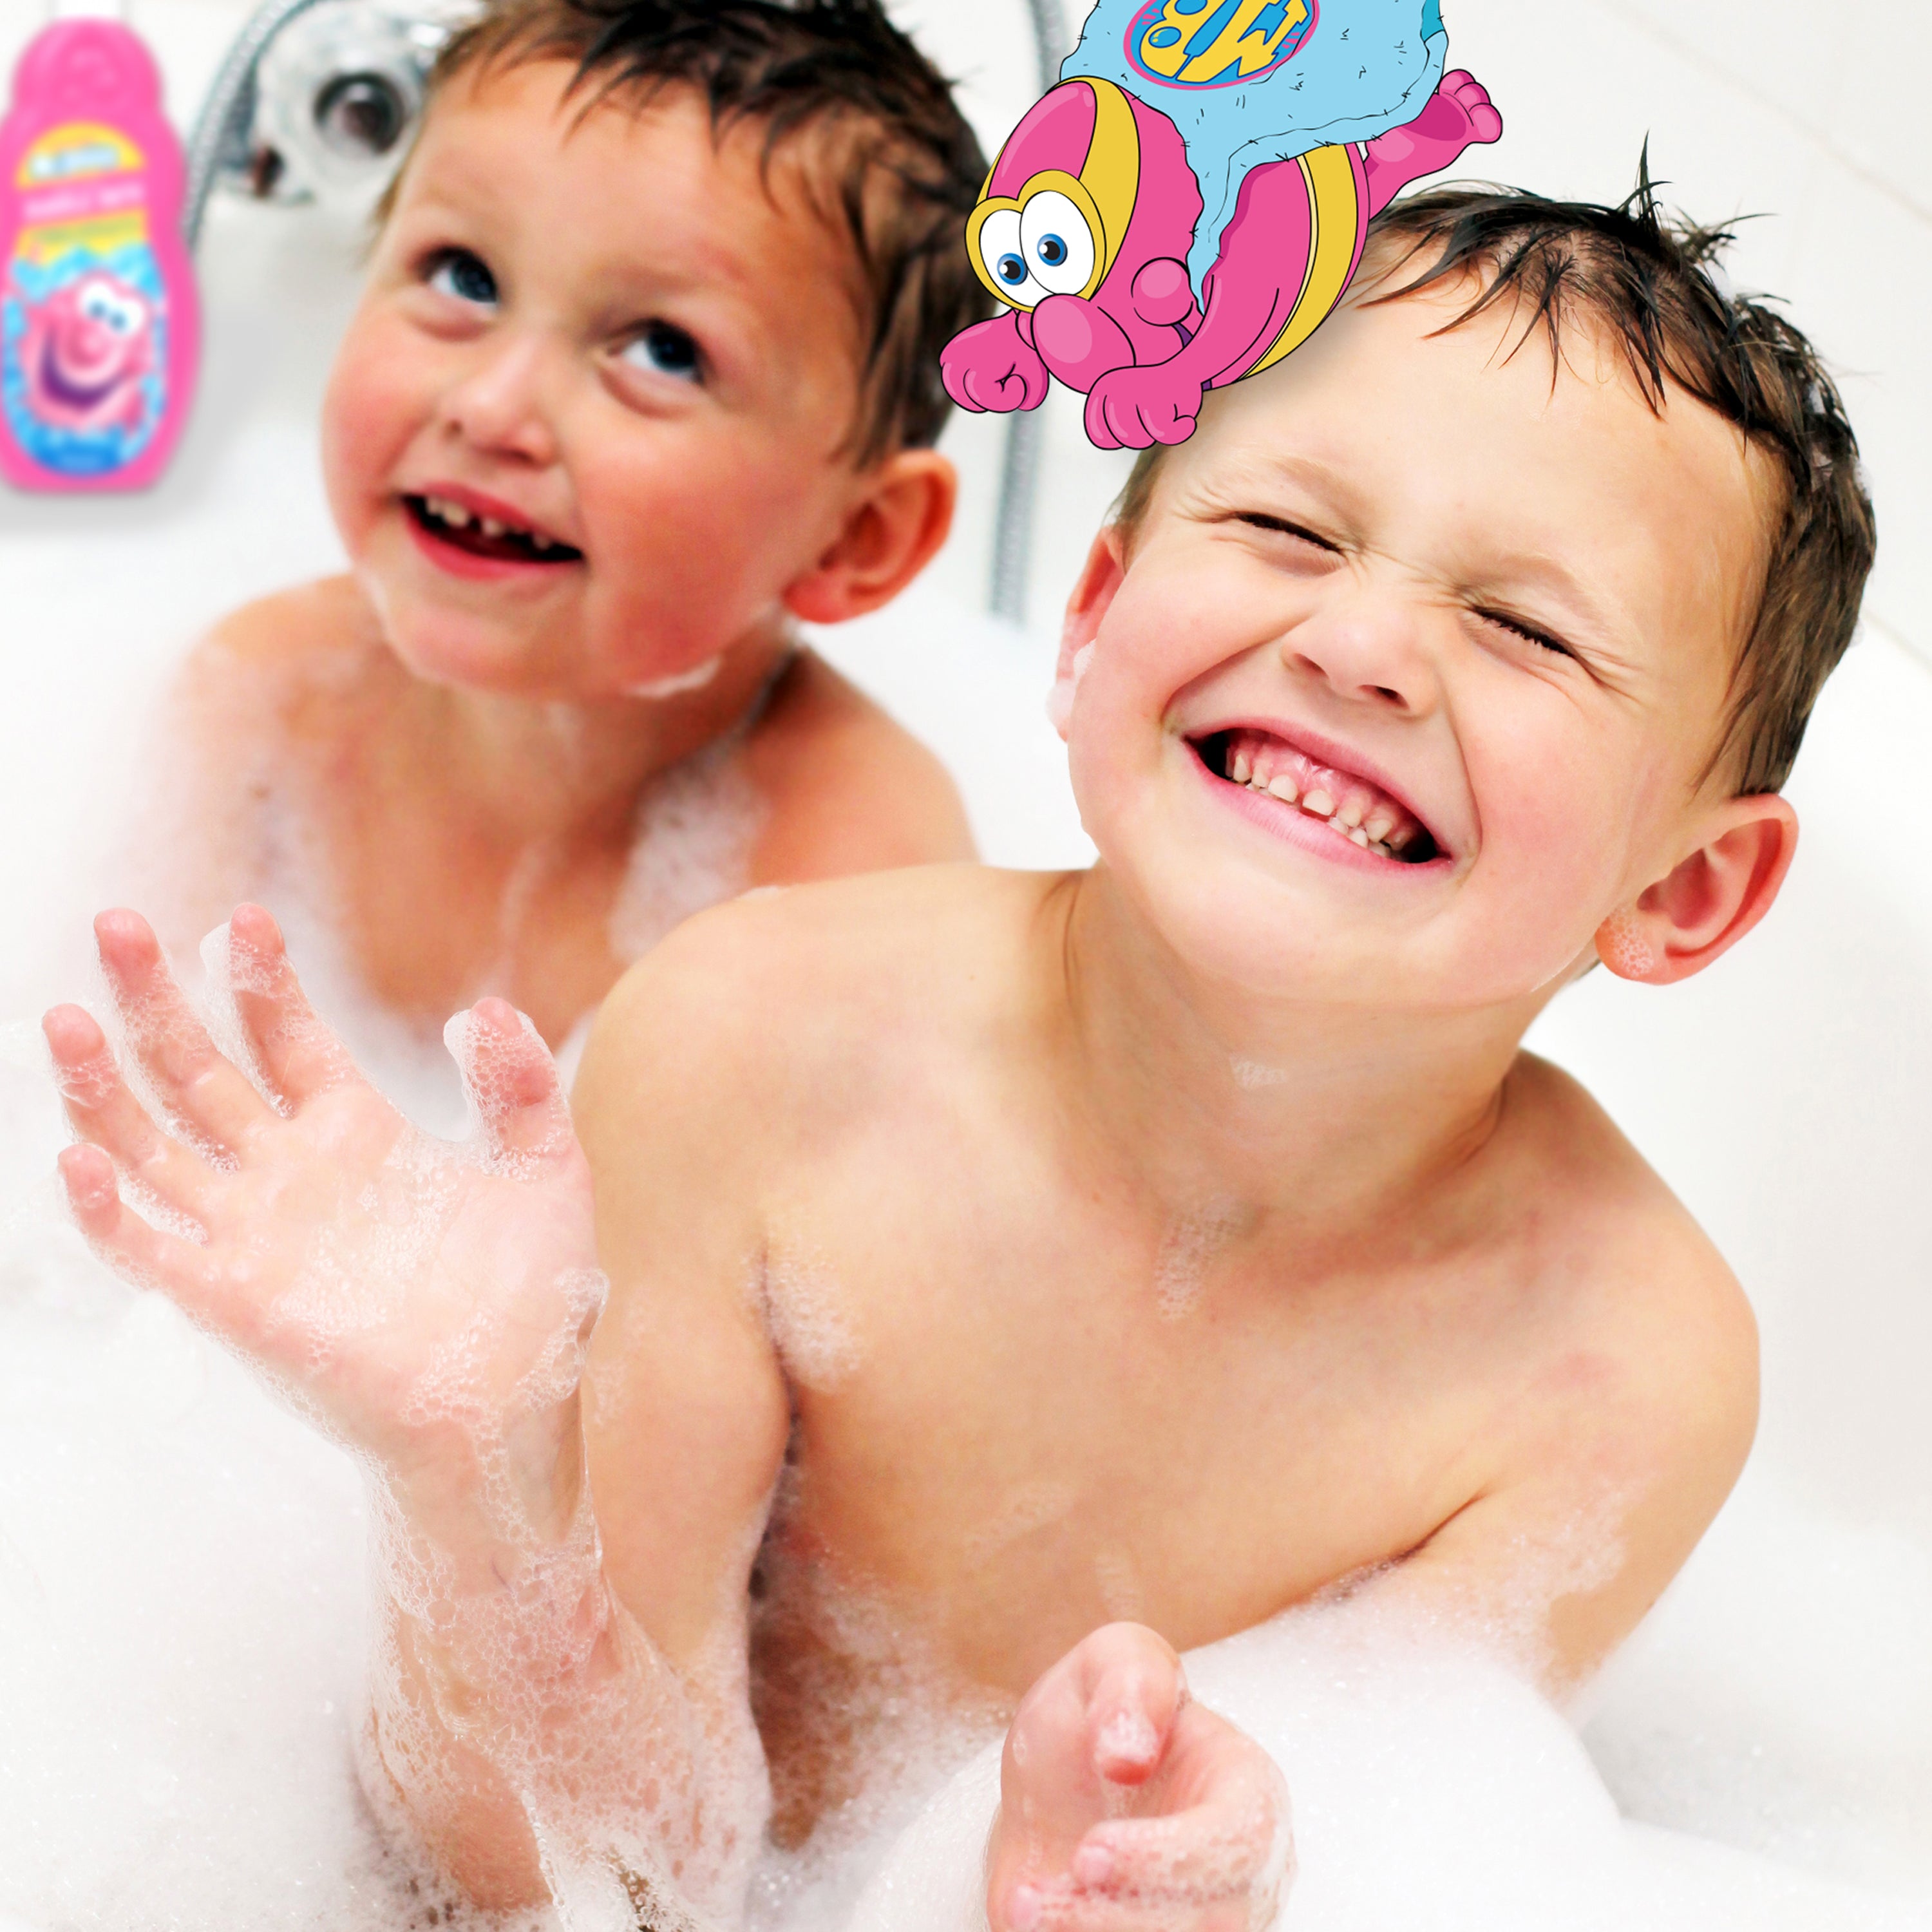 Kids' Bubble Baths in Bath & Shower 